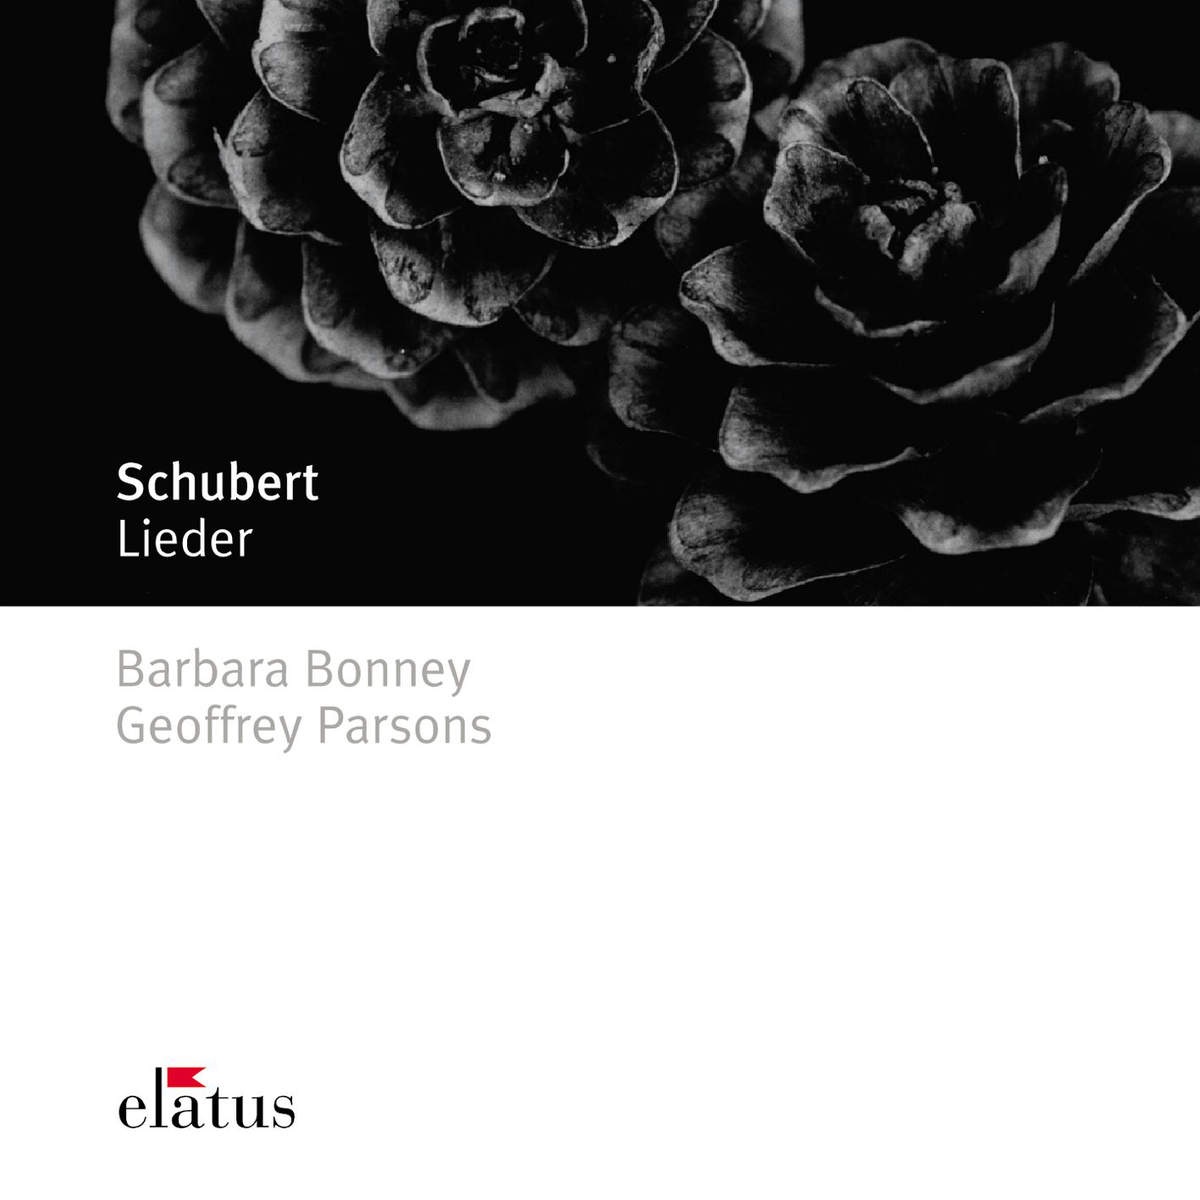 Schubert : "So lasst mich scheinen" D877/3